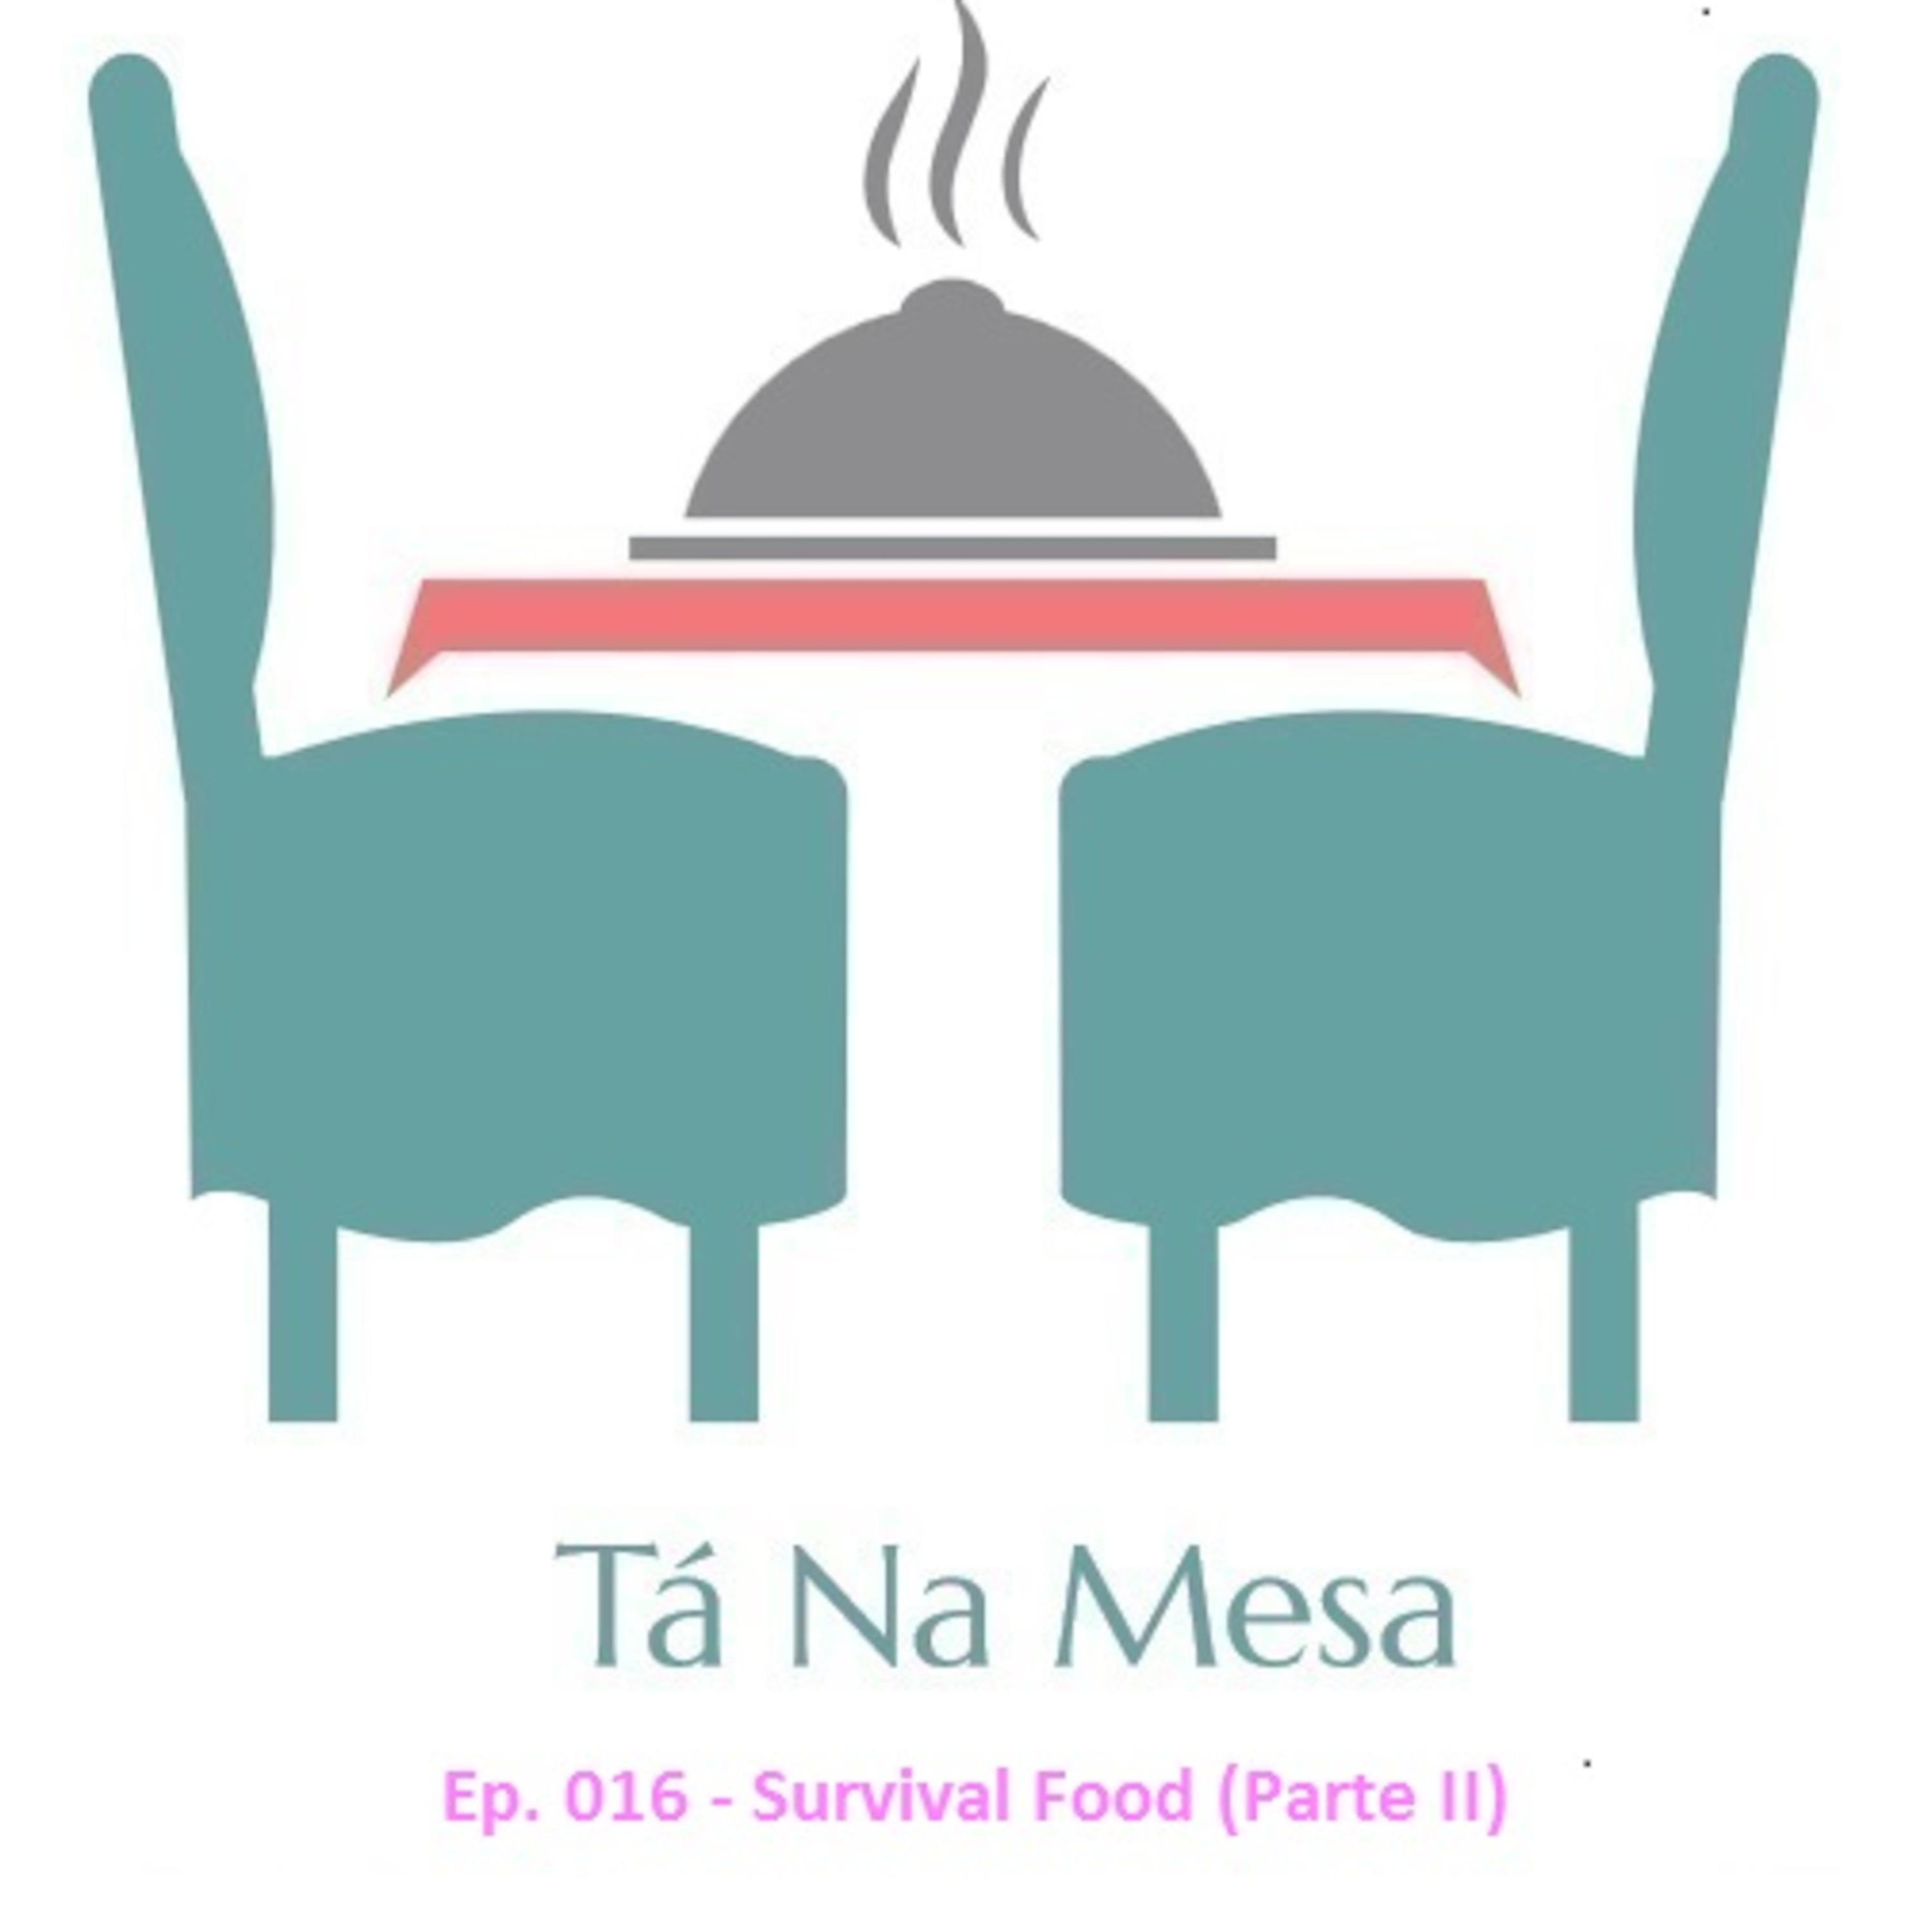 Tá Na Mesa - Ep. 016 - Survival Food - Parte II